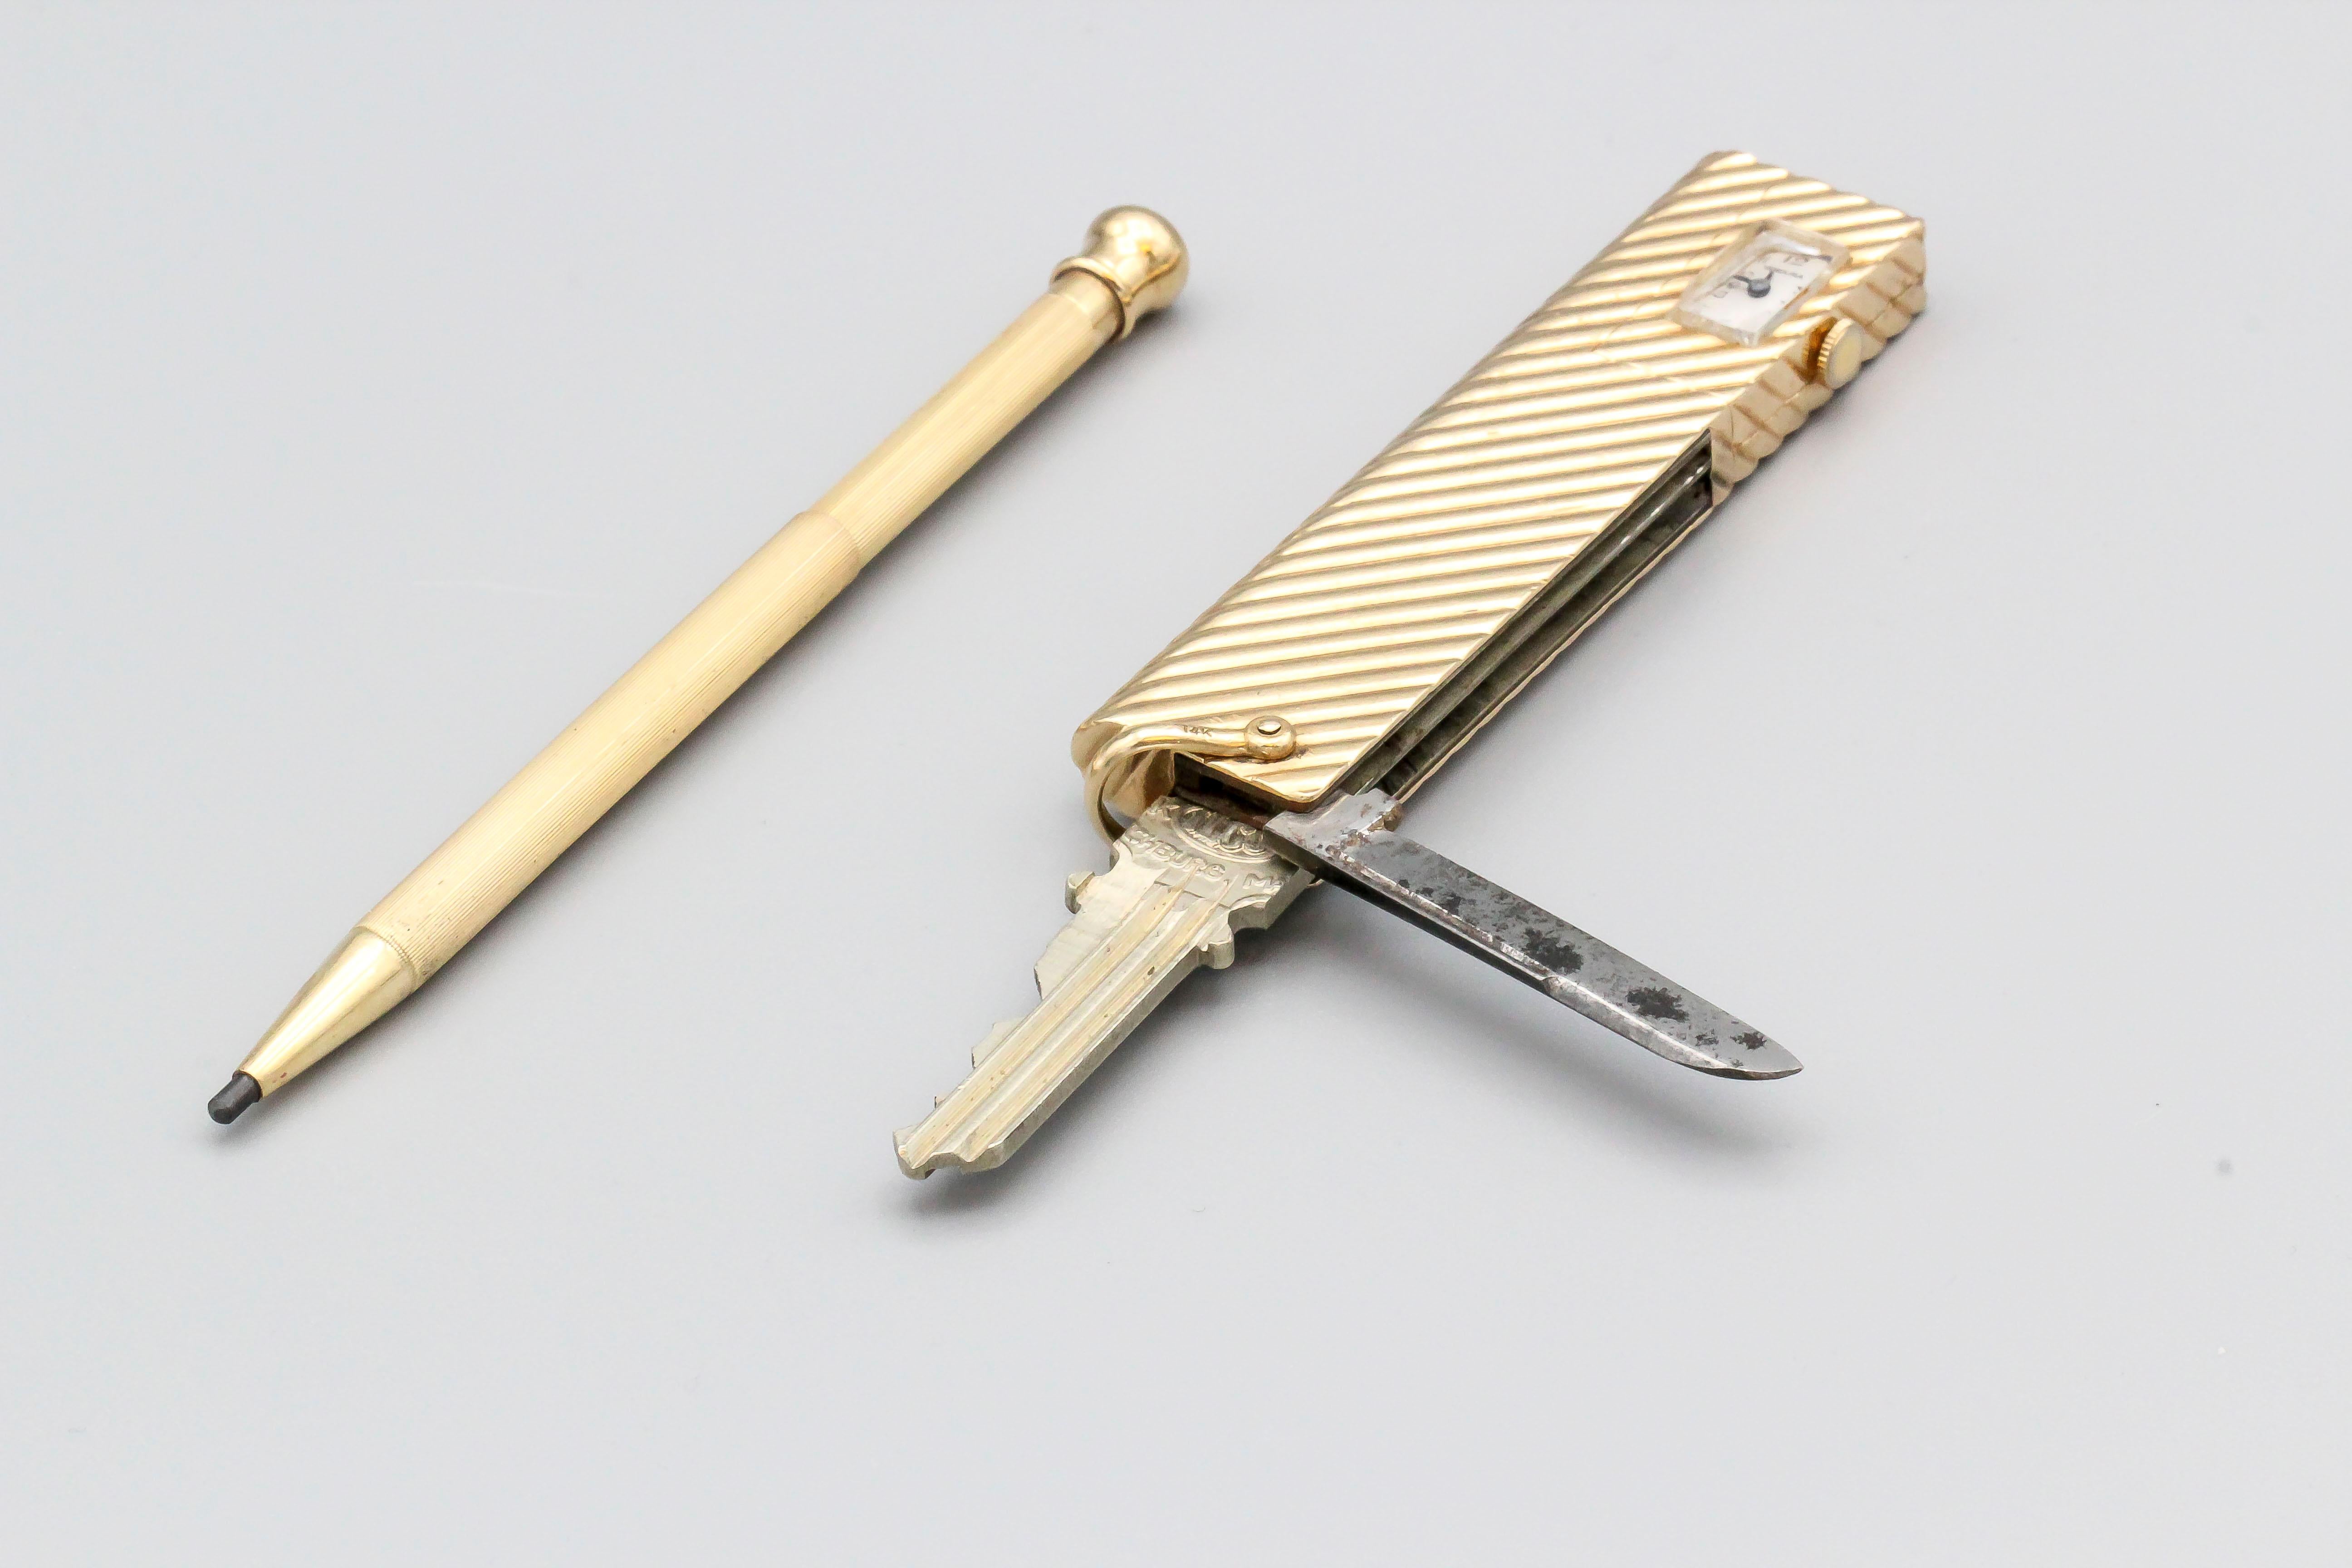 Seltenes und ungewöhnliches Werkzeug aus 14K Gelbgold von Verdura. Er enthält ein Klappmesser, einen versteckten Bleistift, der aus dem Boden herausgleitet, einen Klappschlüssel und eine Uhr. Das Gehäuse ist an der Außenseite gerippt. Funktioniert